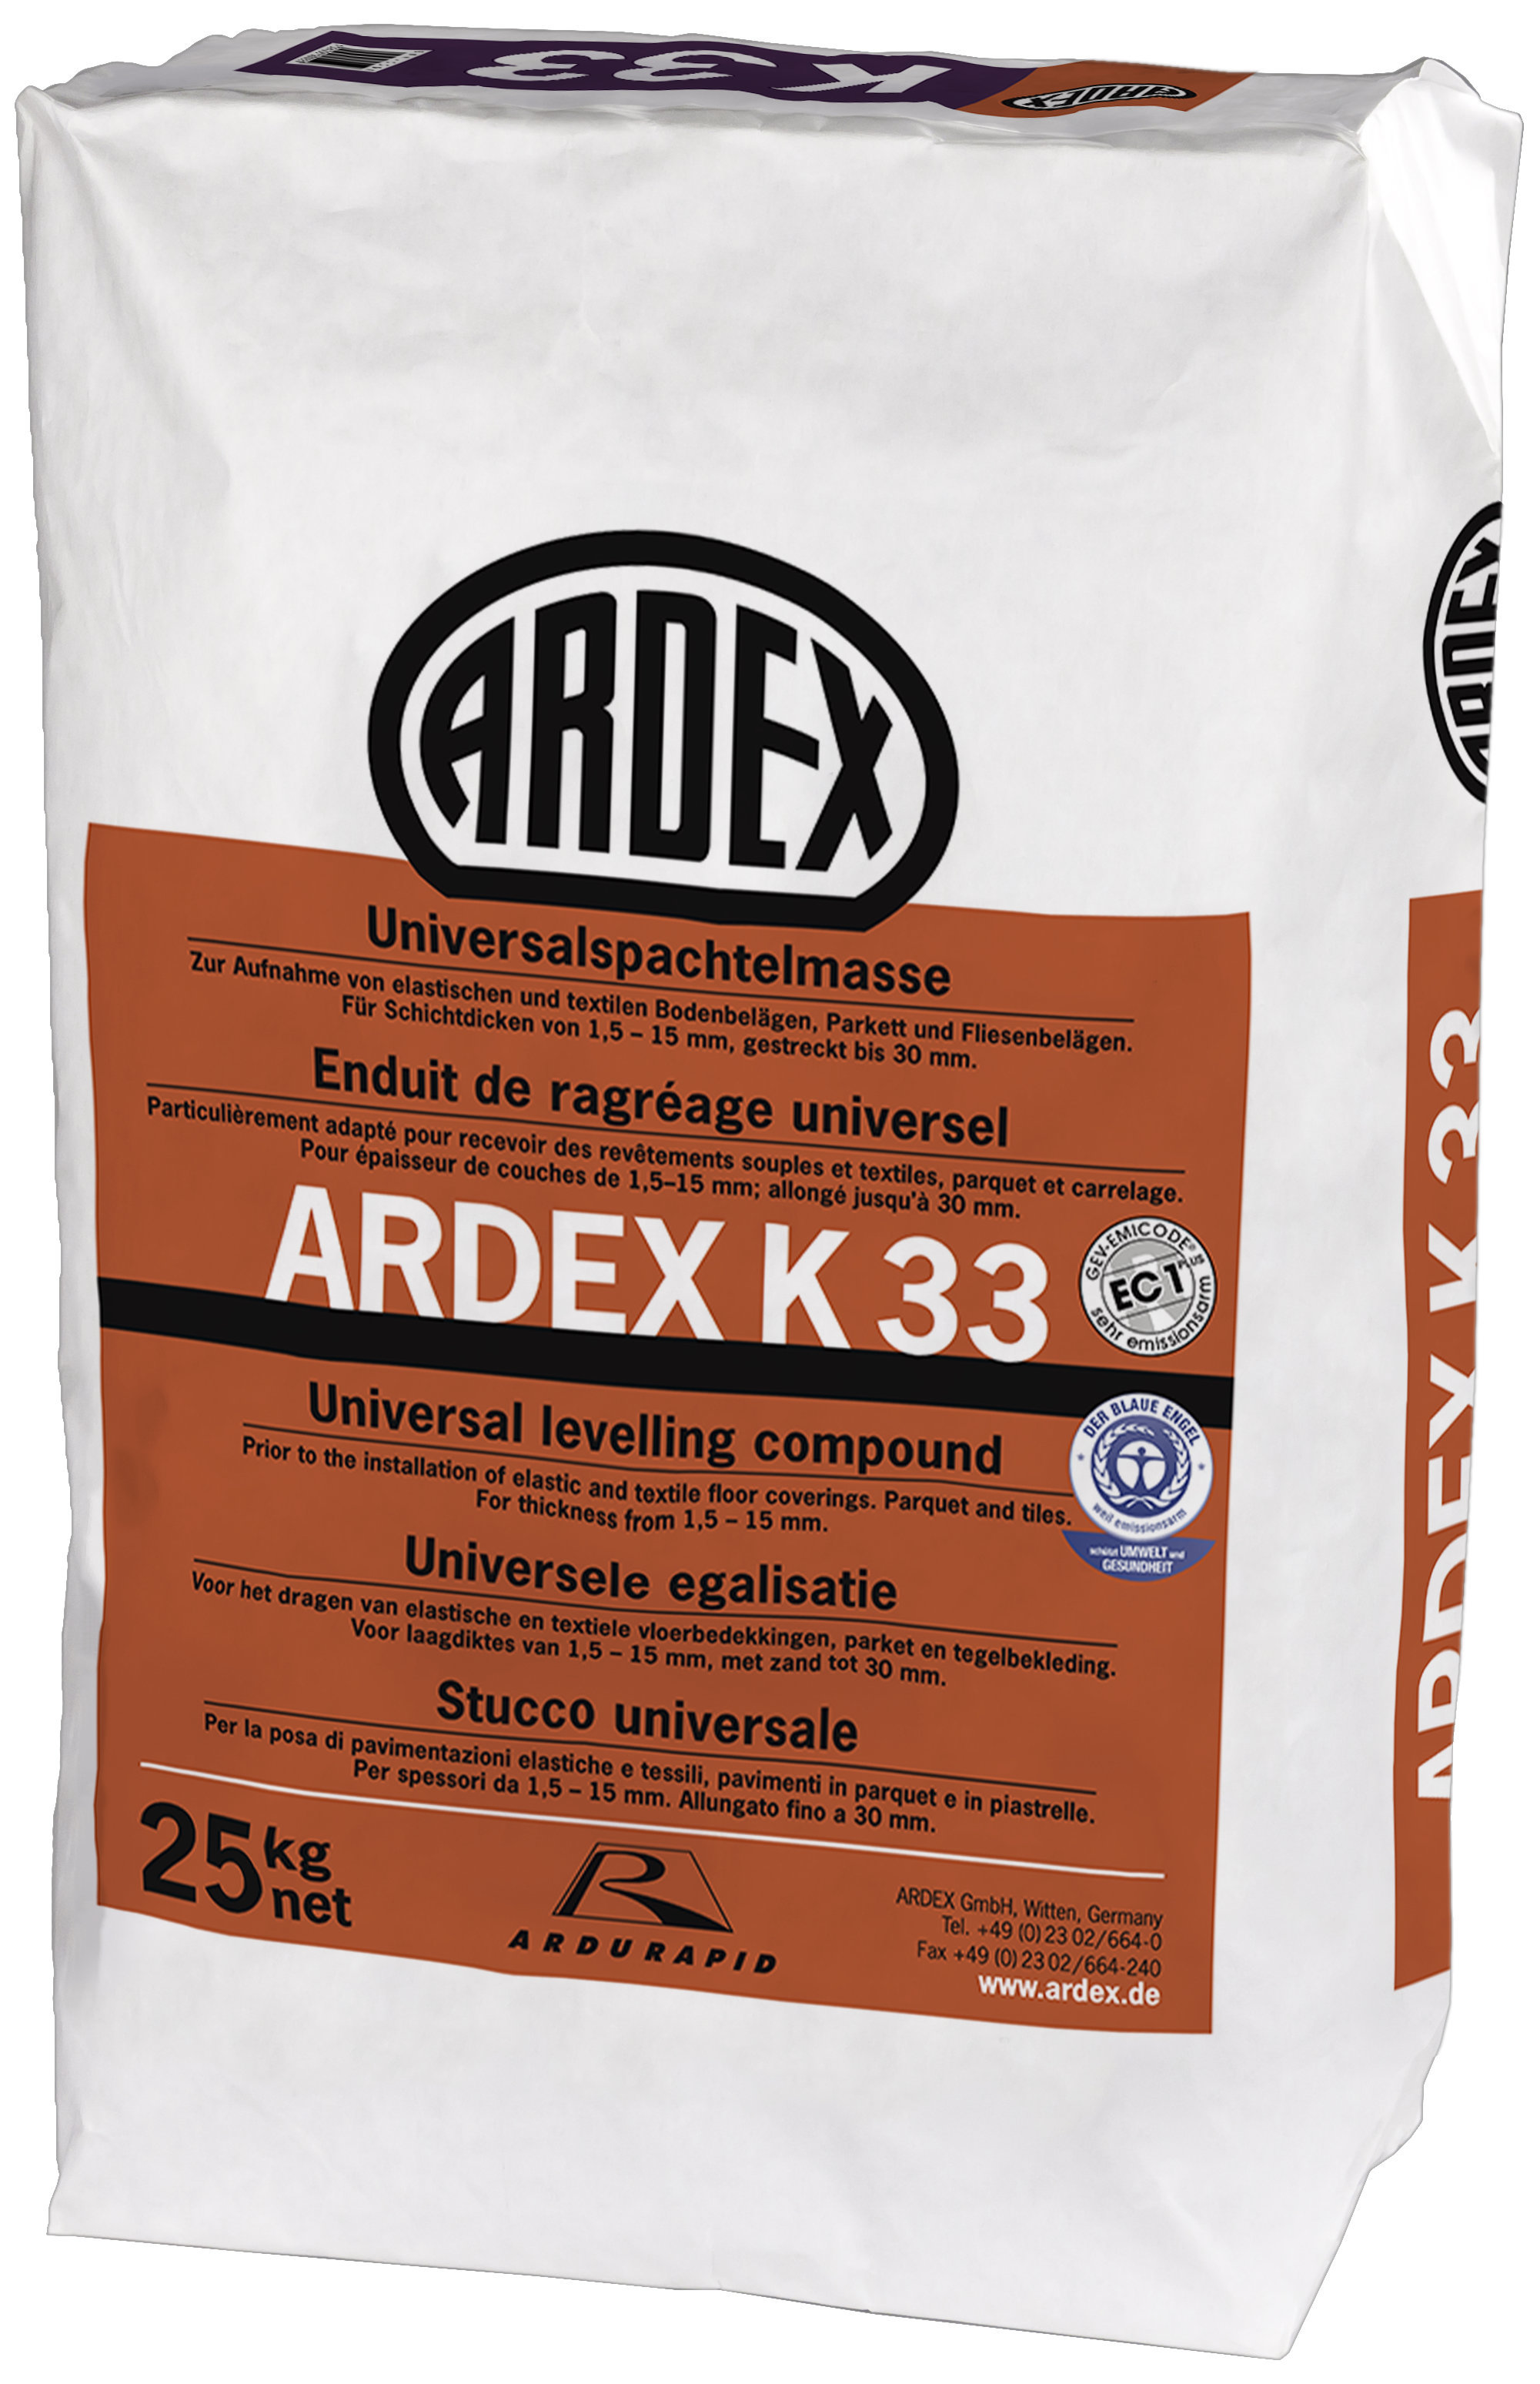 ARDEX K33 Universalspachtelmasse